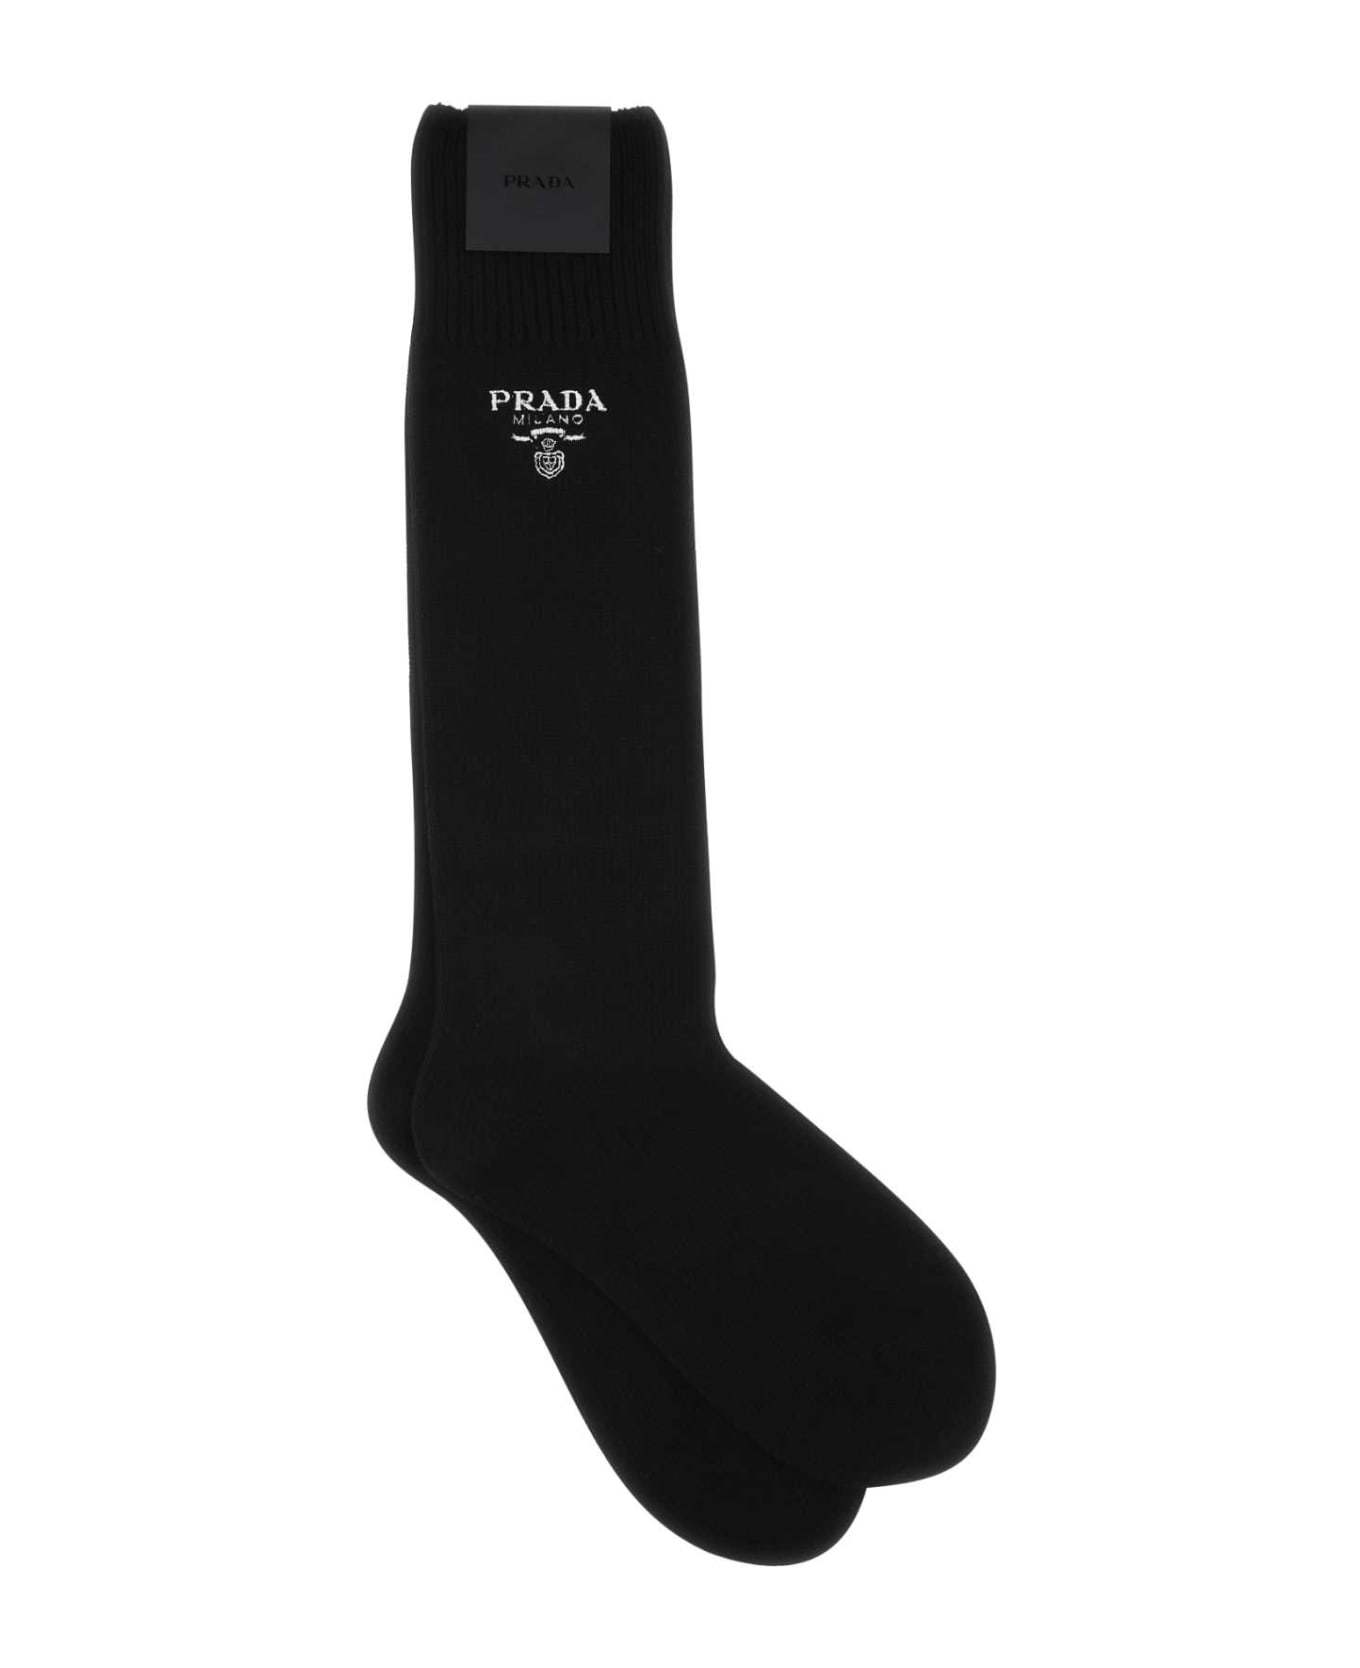 Prada Black Virgin Wool Blend Socks - NERO